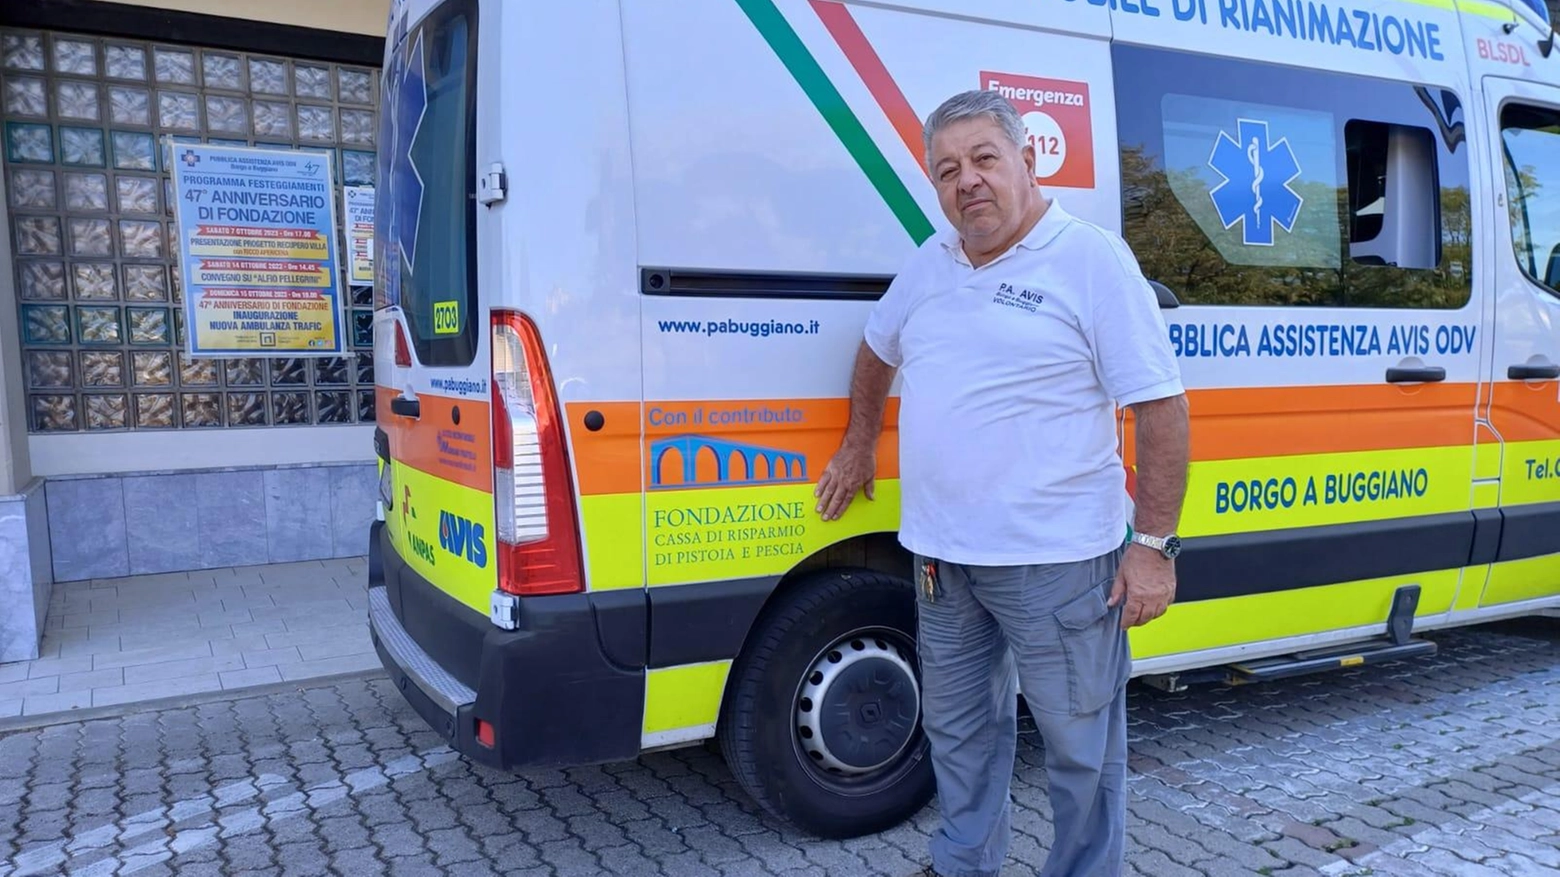 La festa della Pubblica assistenza. Arriva la nuova ambulanza donata dalla Fondazione Caript